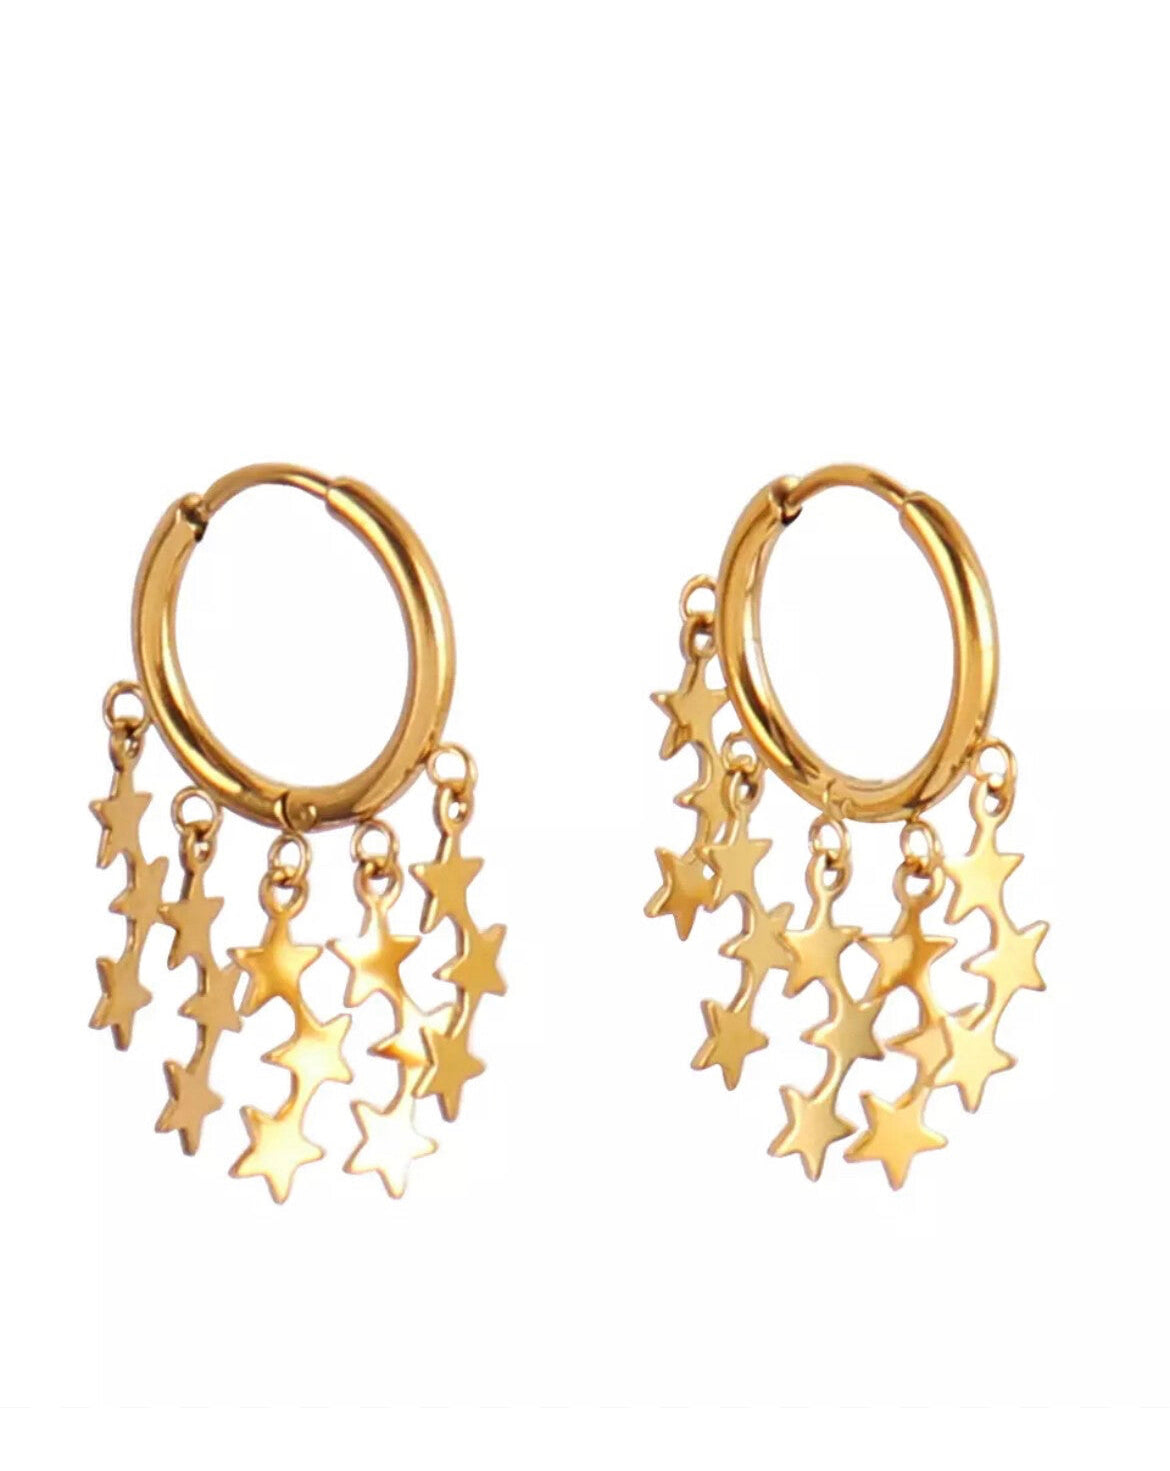 Las vegas earrings - gold